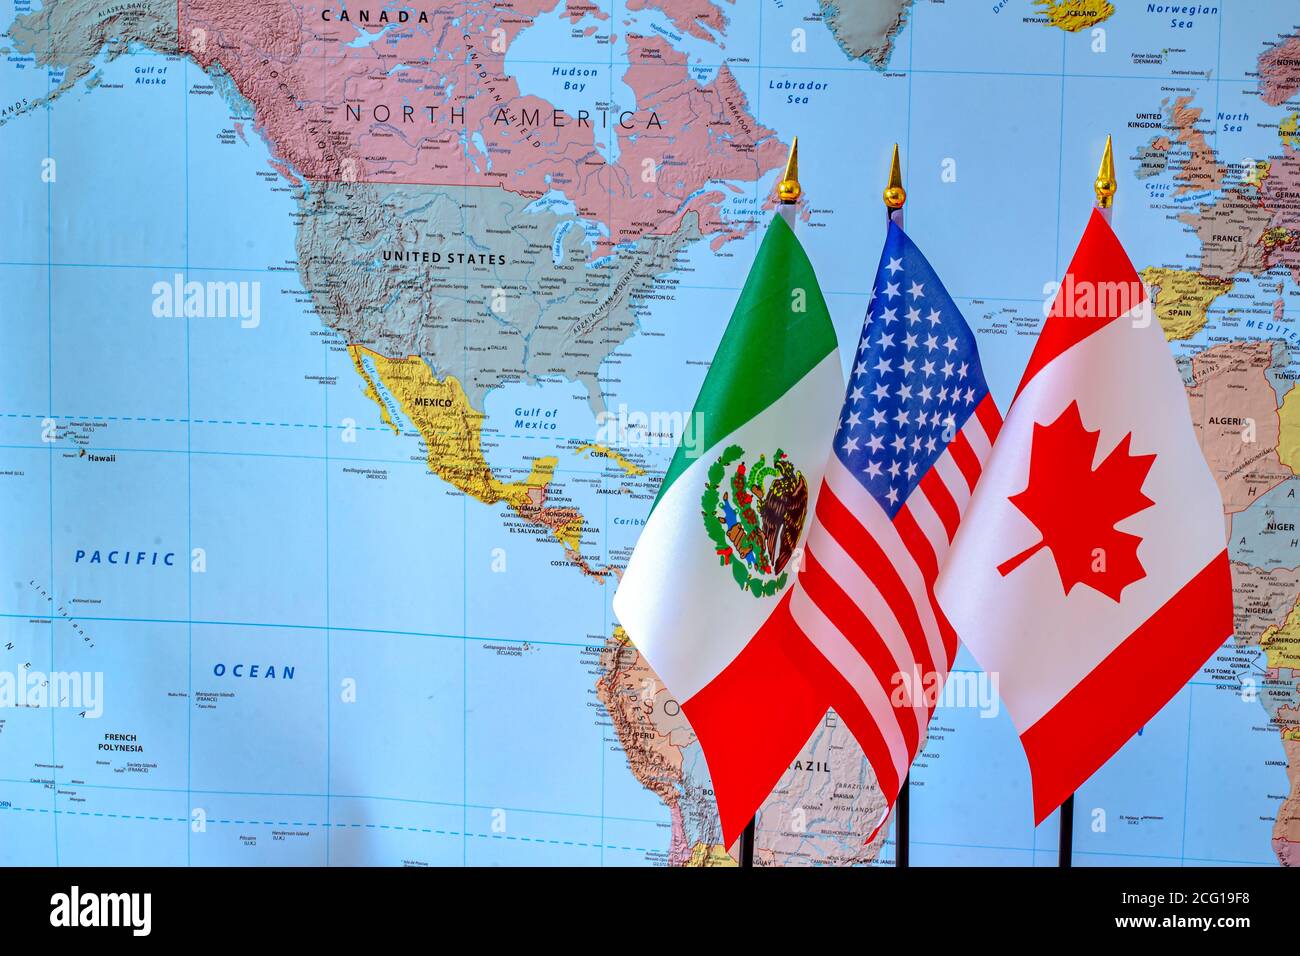 Calgary, Alberta, Canada. 8 septembre 2020. Canada, États-Unis, drapeaux mexicains, accord de libre-échange nord-américain nouveau deal. Banque D'Images